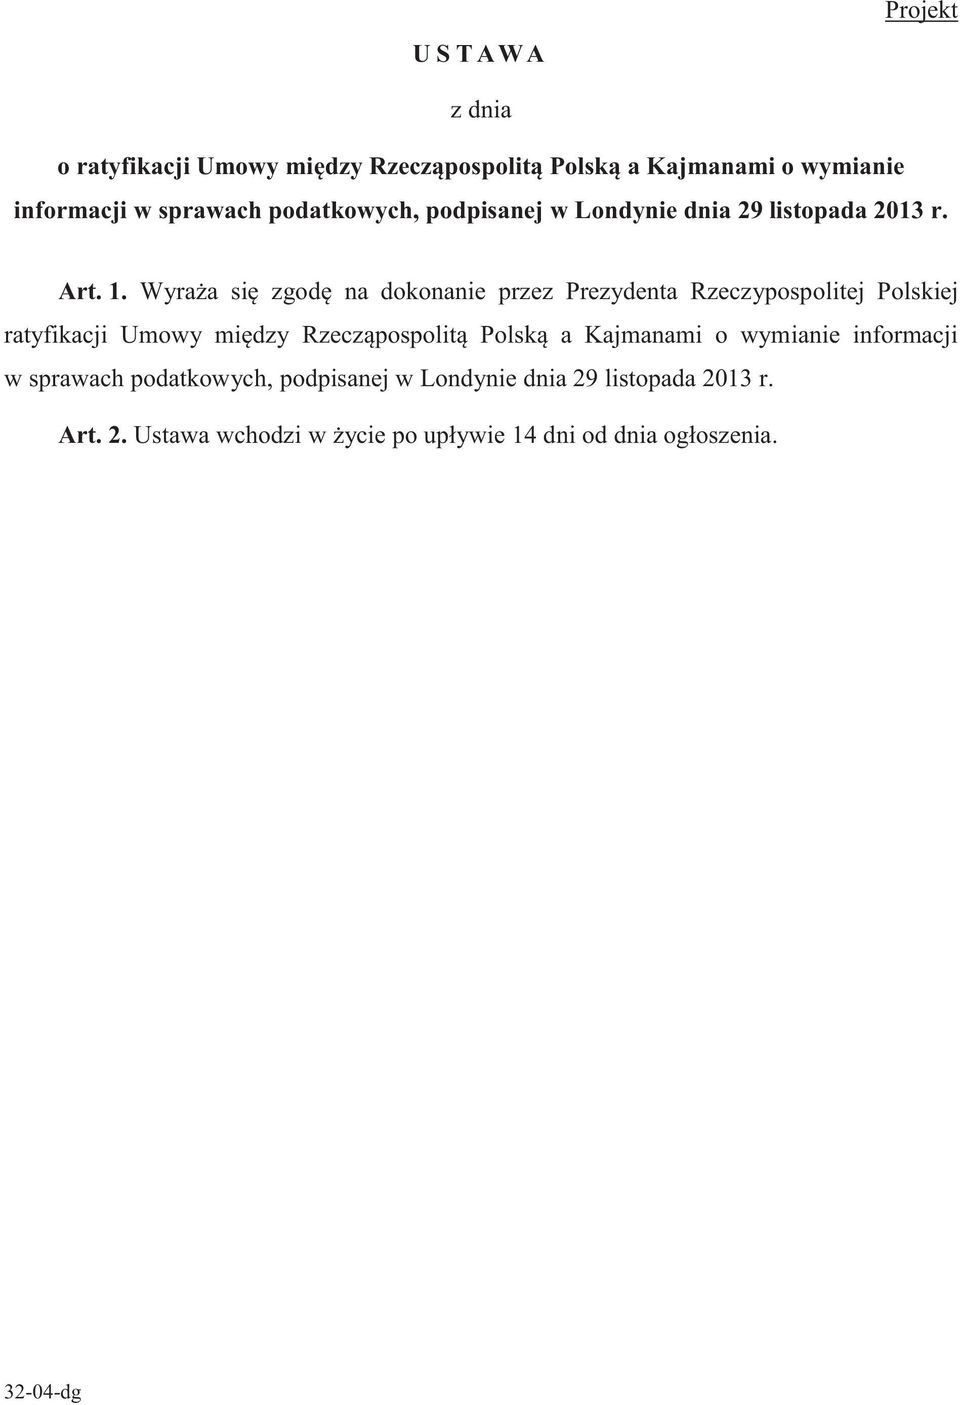 Wyraża się zgodę na dokonanie przez Prezydenta Rzeczypospolitej Polskiej ratyfikacji Umowy między Rzecząpospolitą Polską a